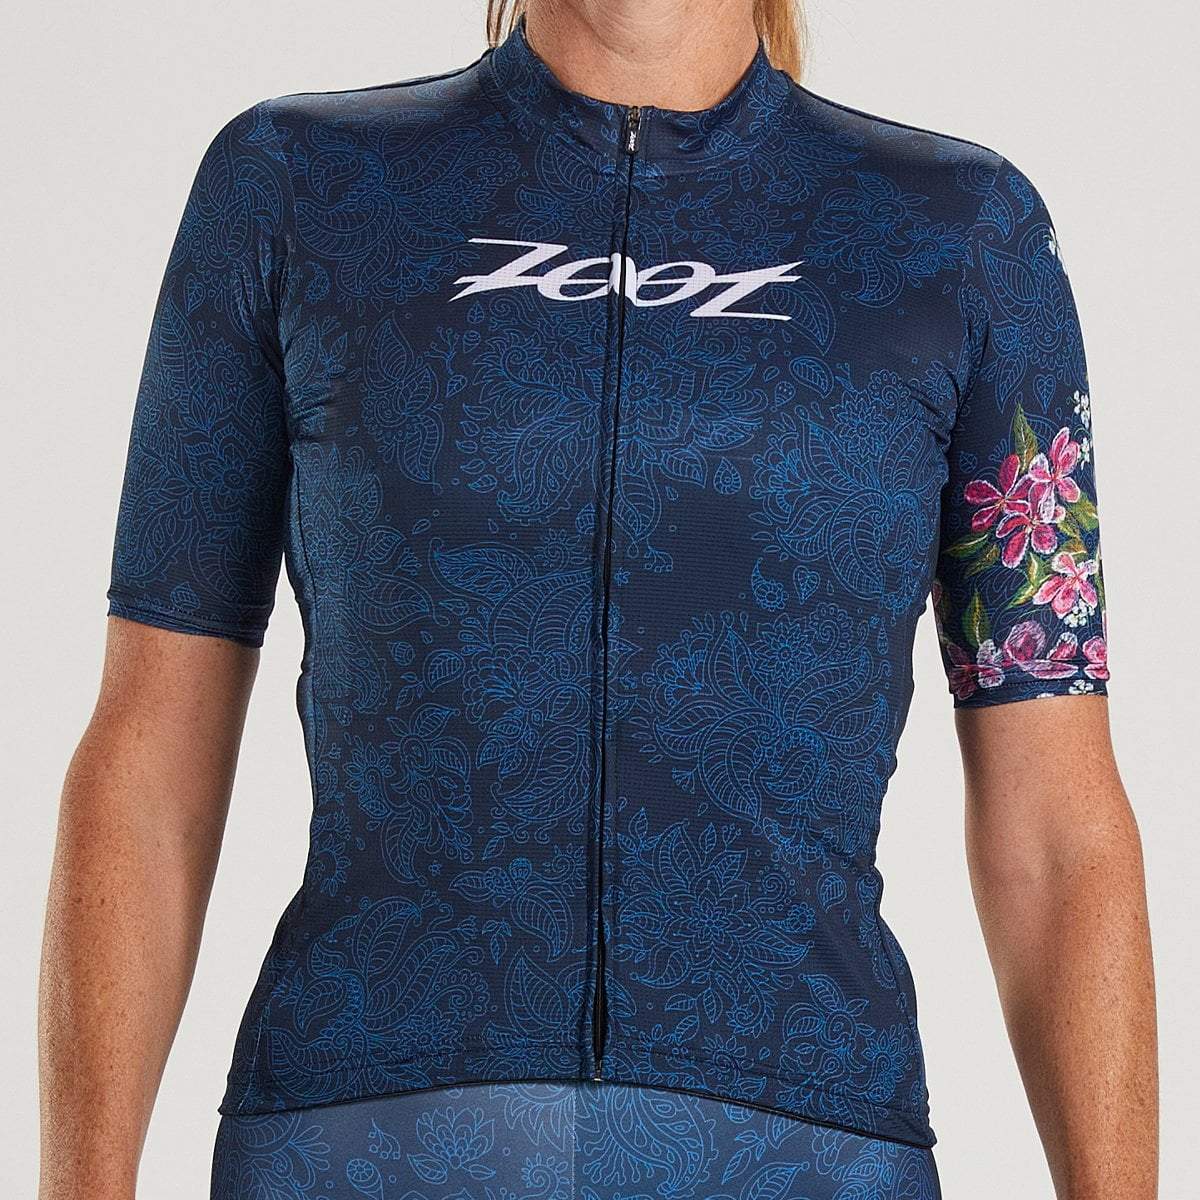 Zoot Sports Womens LTD Cycle Aero Jersey - Blue Roar